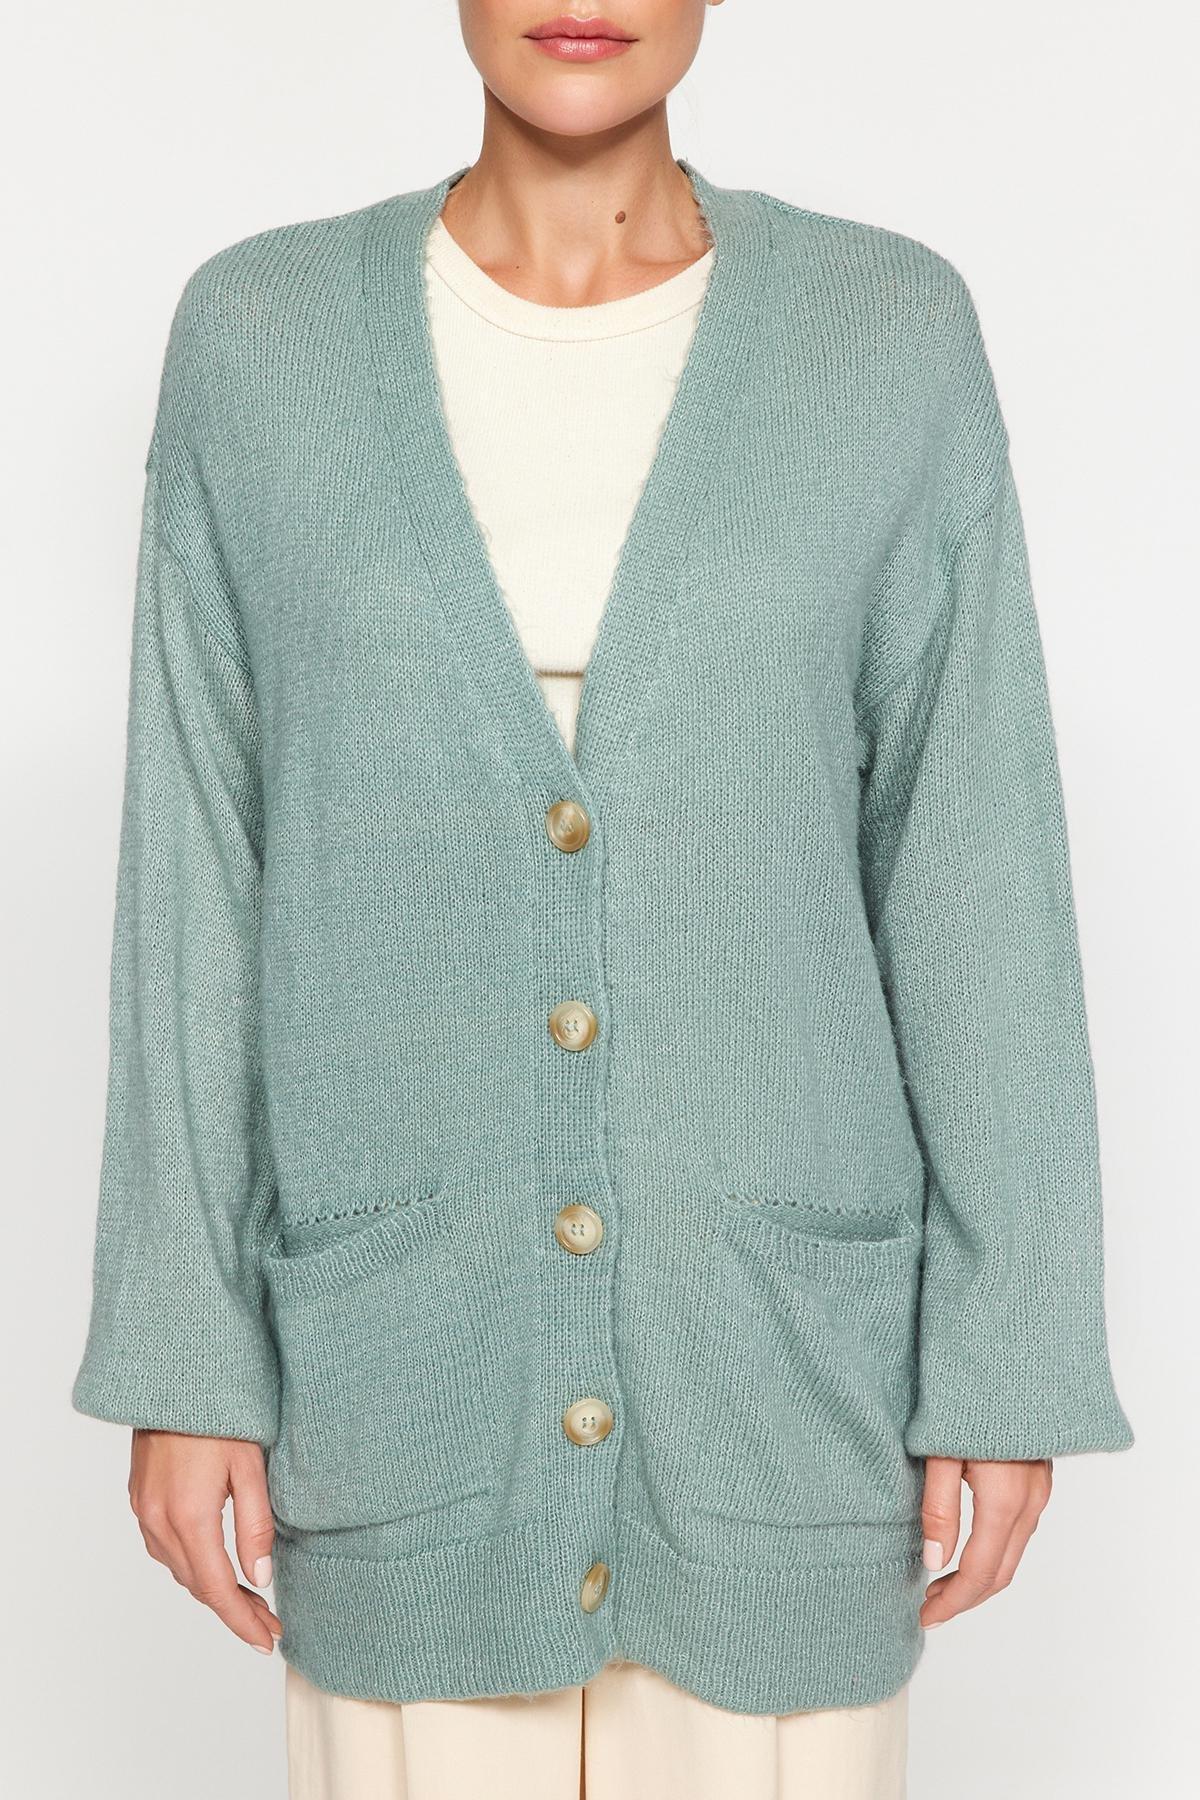 Trendyol - Green Oversize Pocket Knitwear Cardigan